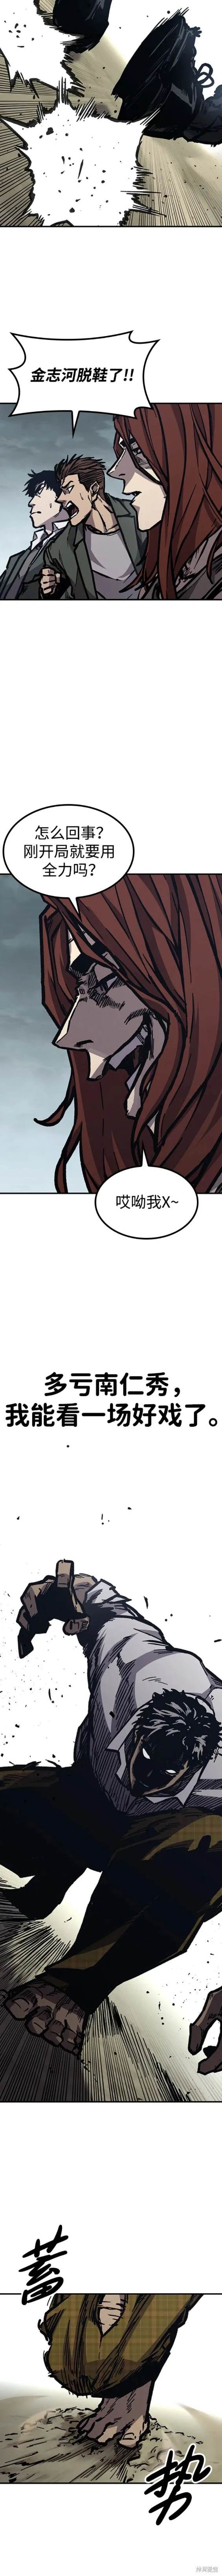 百帕战神漫画,第53话10图